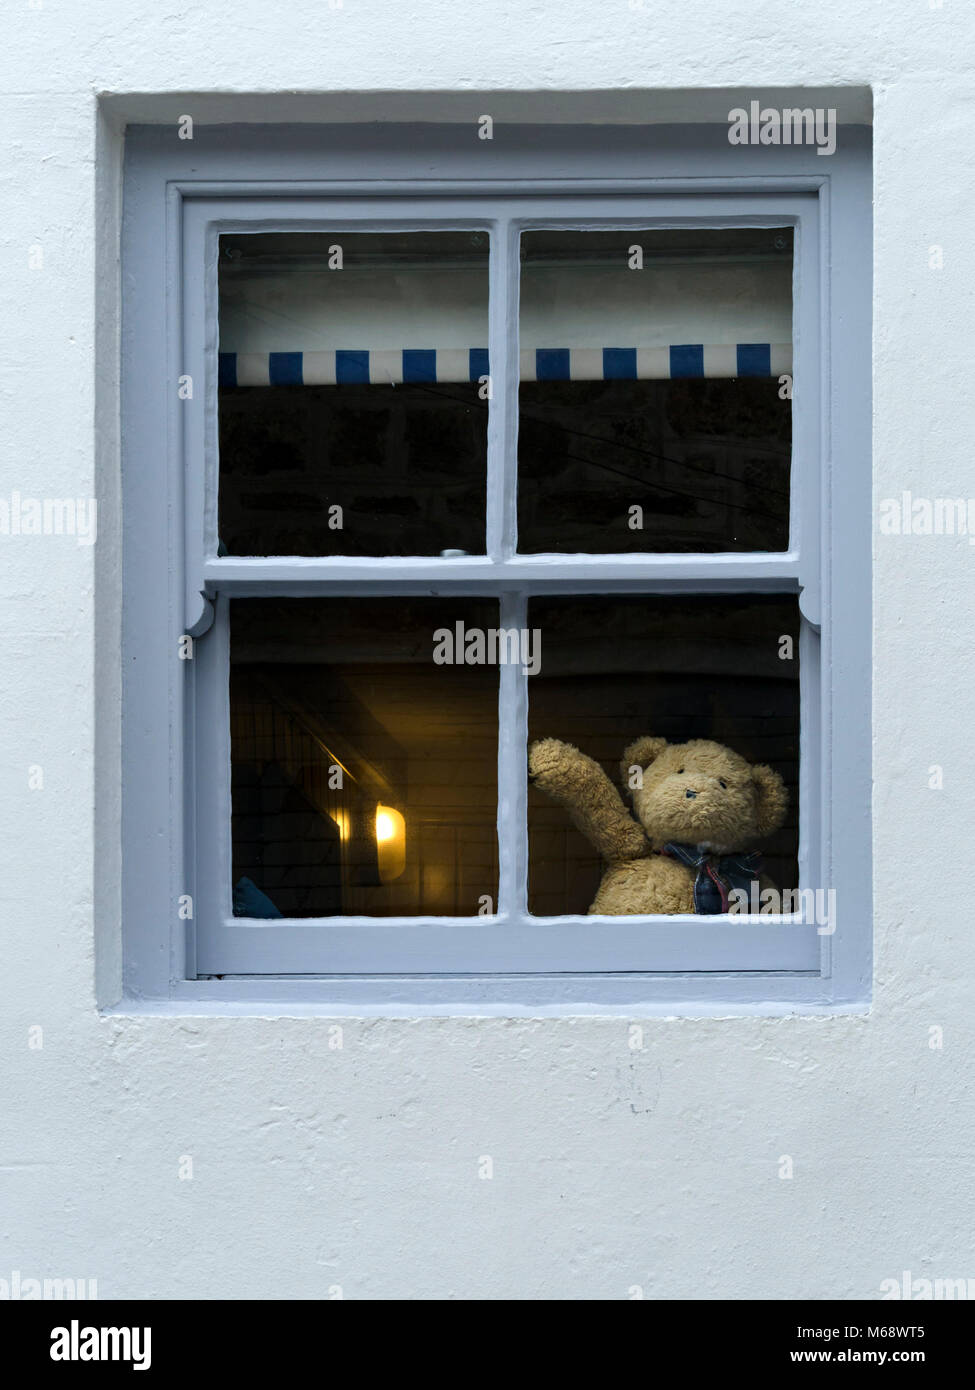 Der süße Teddybär winkt Hallo oder verabschiedet sich vom Hausfenster, was auf Selbstisolation oder soziale Distanzierung während der Corona-Virus-Kovid19-Pandemie hindeutet Stockfoto